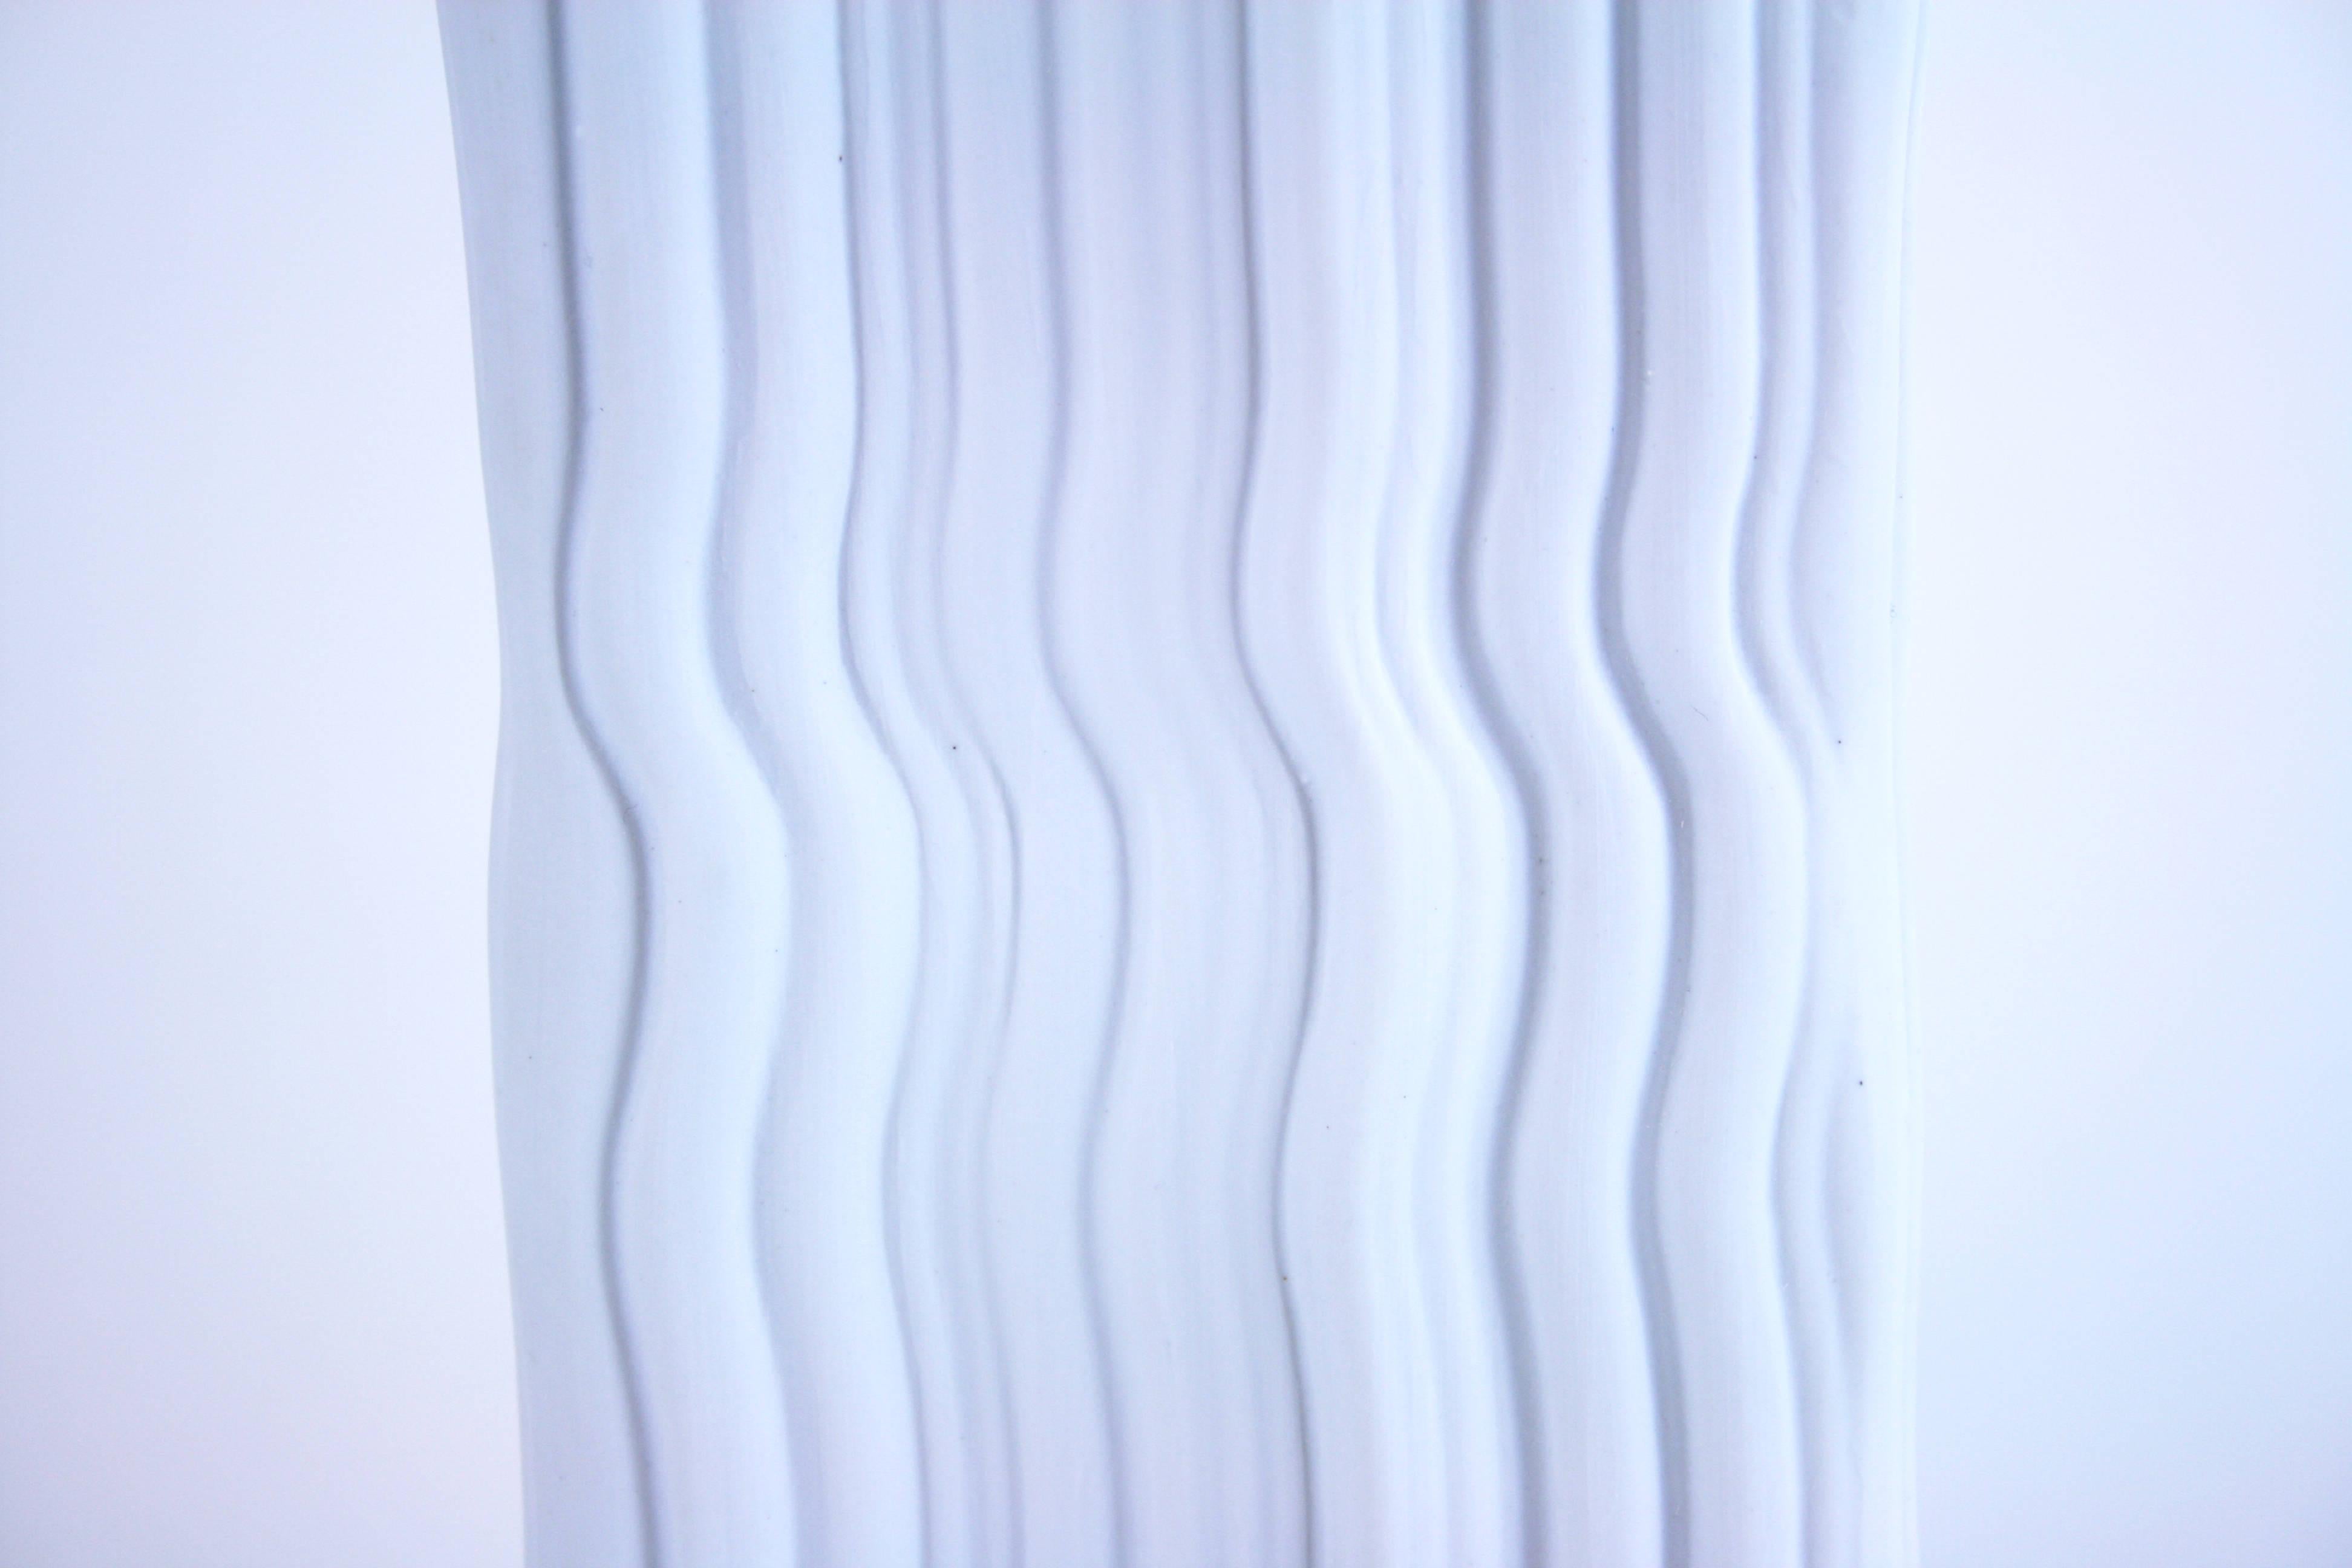 Vase en porcelaine blanche bisquit design de Naaman Israel 1990. Un exemple intéressant de l'émergence de la communauté du design en Israël dans les années 1990. Il est basé sur la définition de la forme et du matériau du vase classique mais rompt